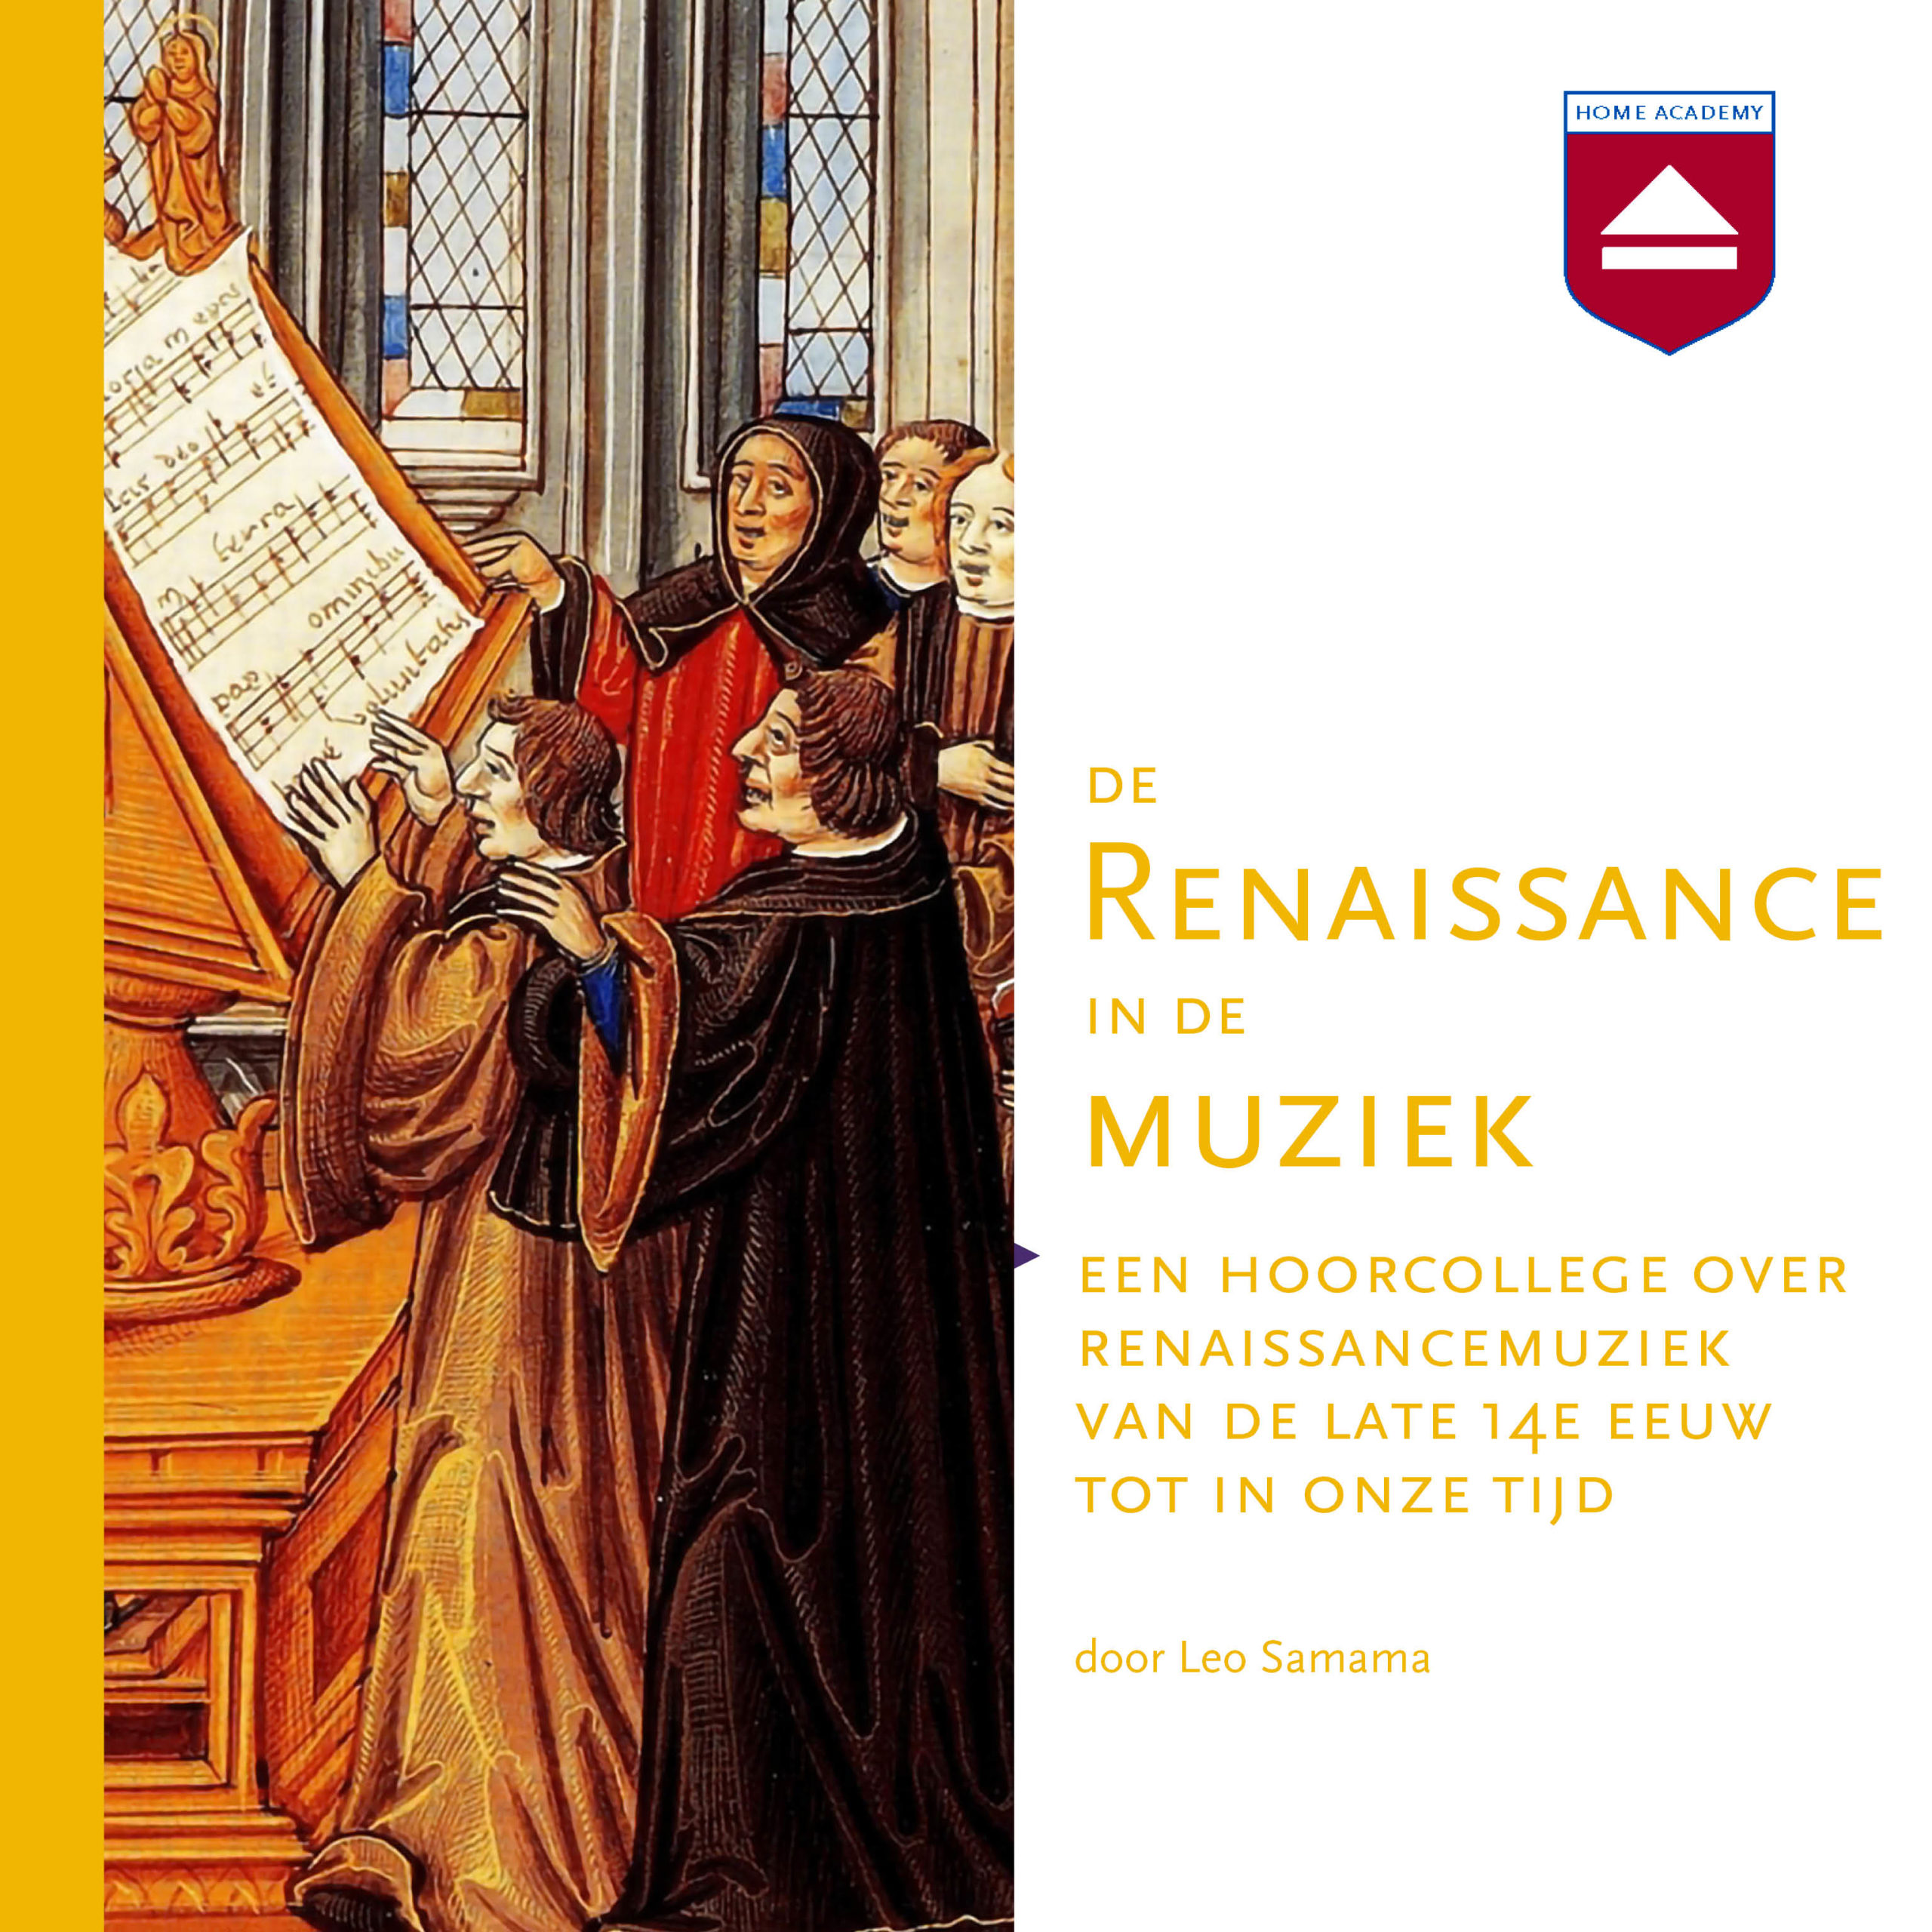 De Renaissance in de muziek hoorcollege